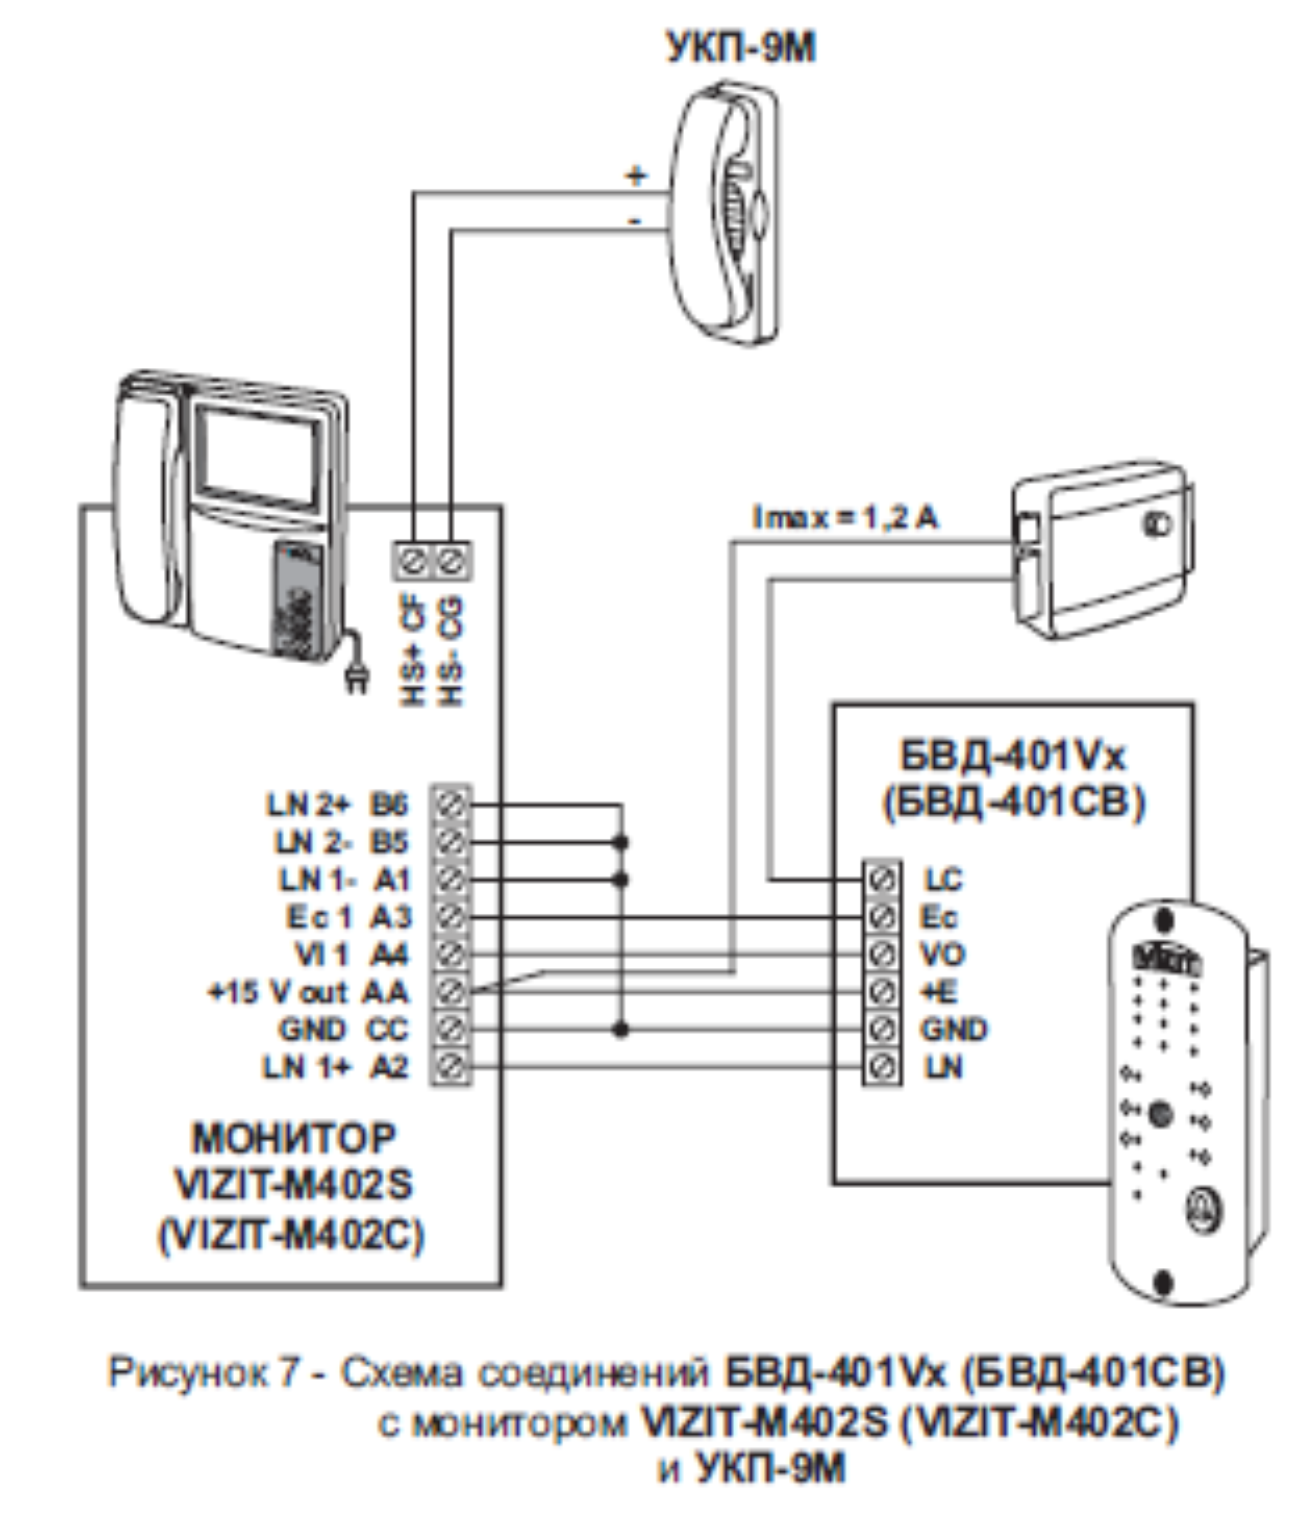 Схема соединений с монитором и БВД-401